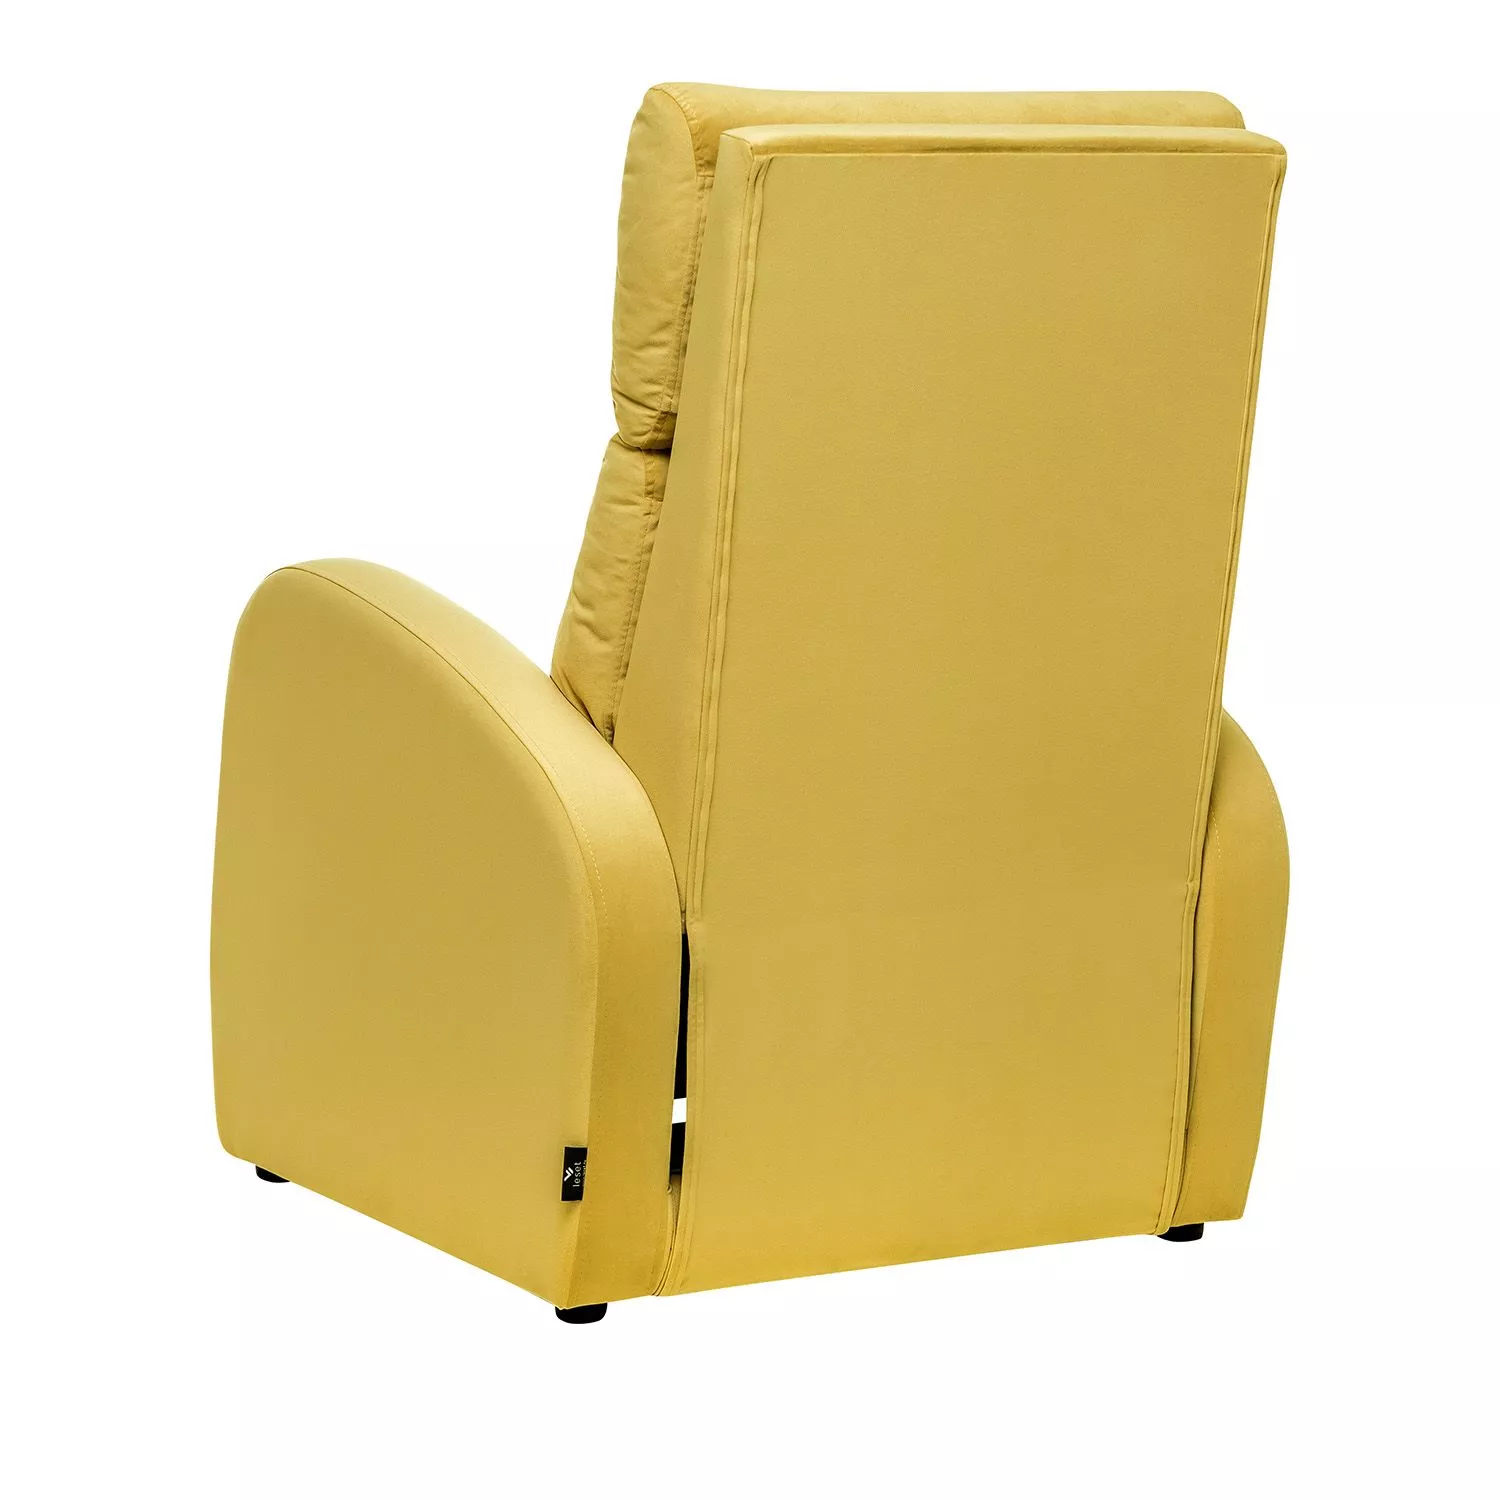 Кресло реклайнер Грэмми-1 желтый V28